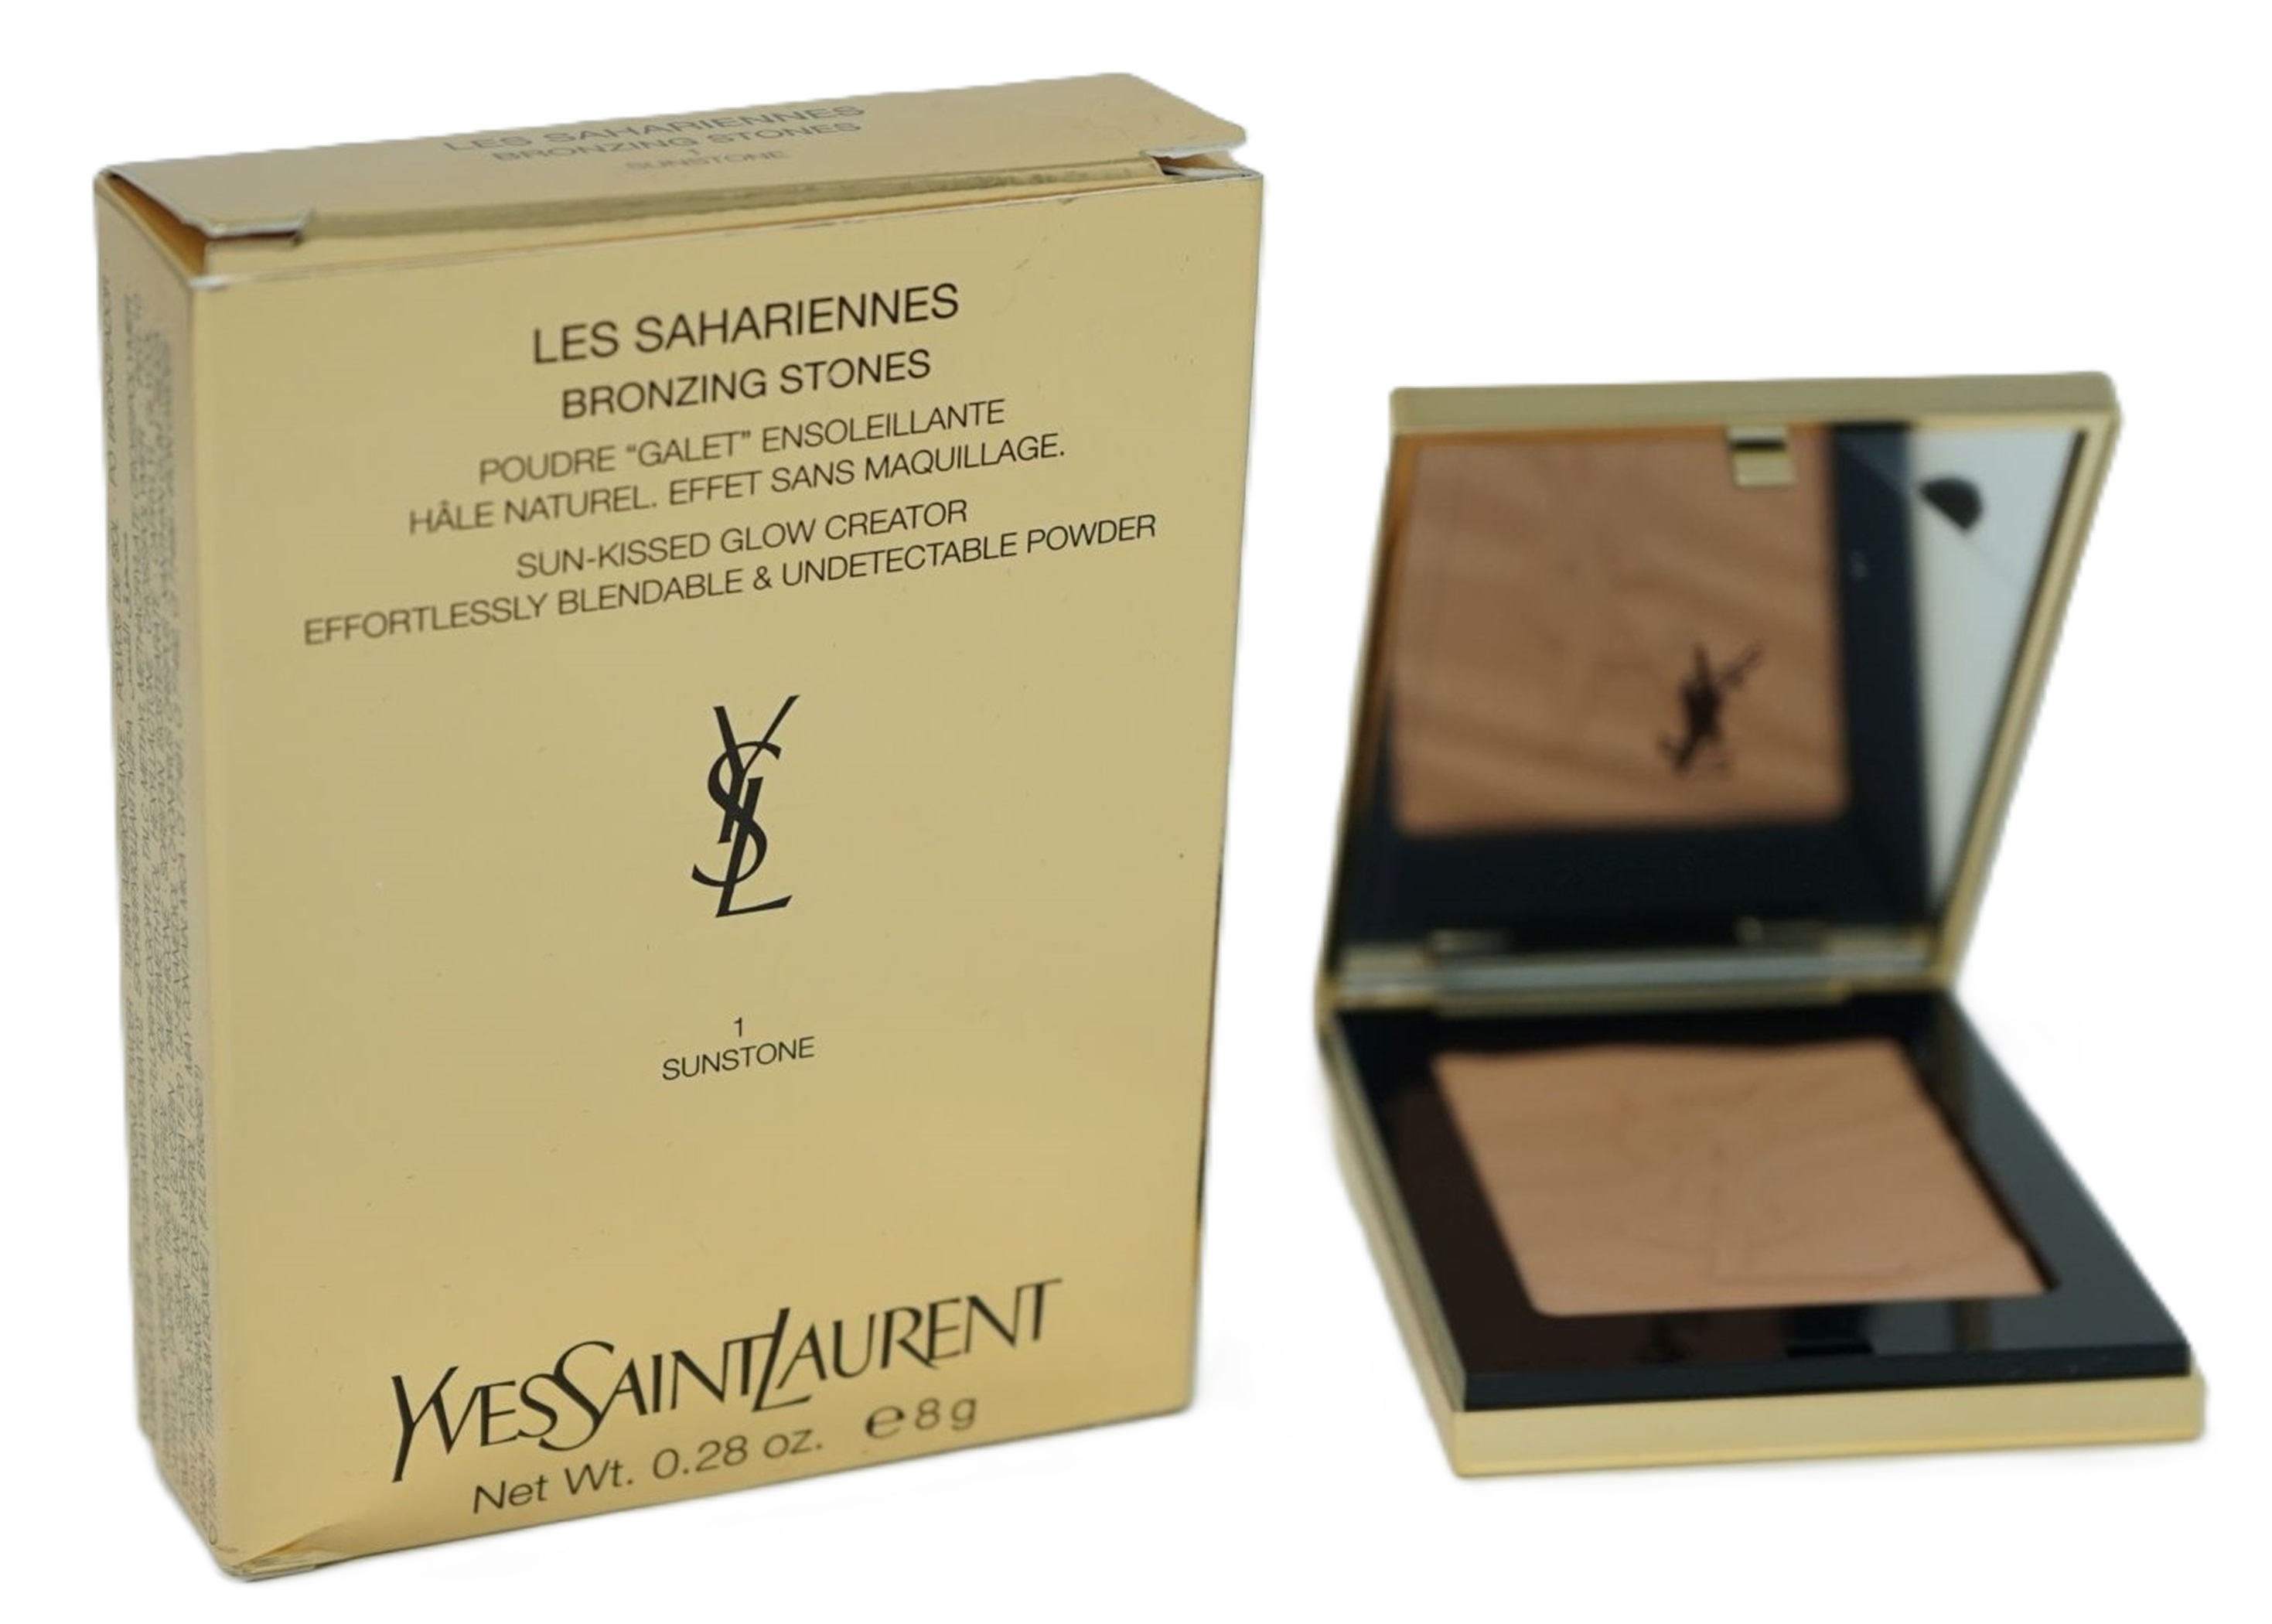 Yves Saint Laurent Les Sahariennes Healthy Undetectable-Powder Puder 1 Sunstone